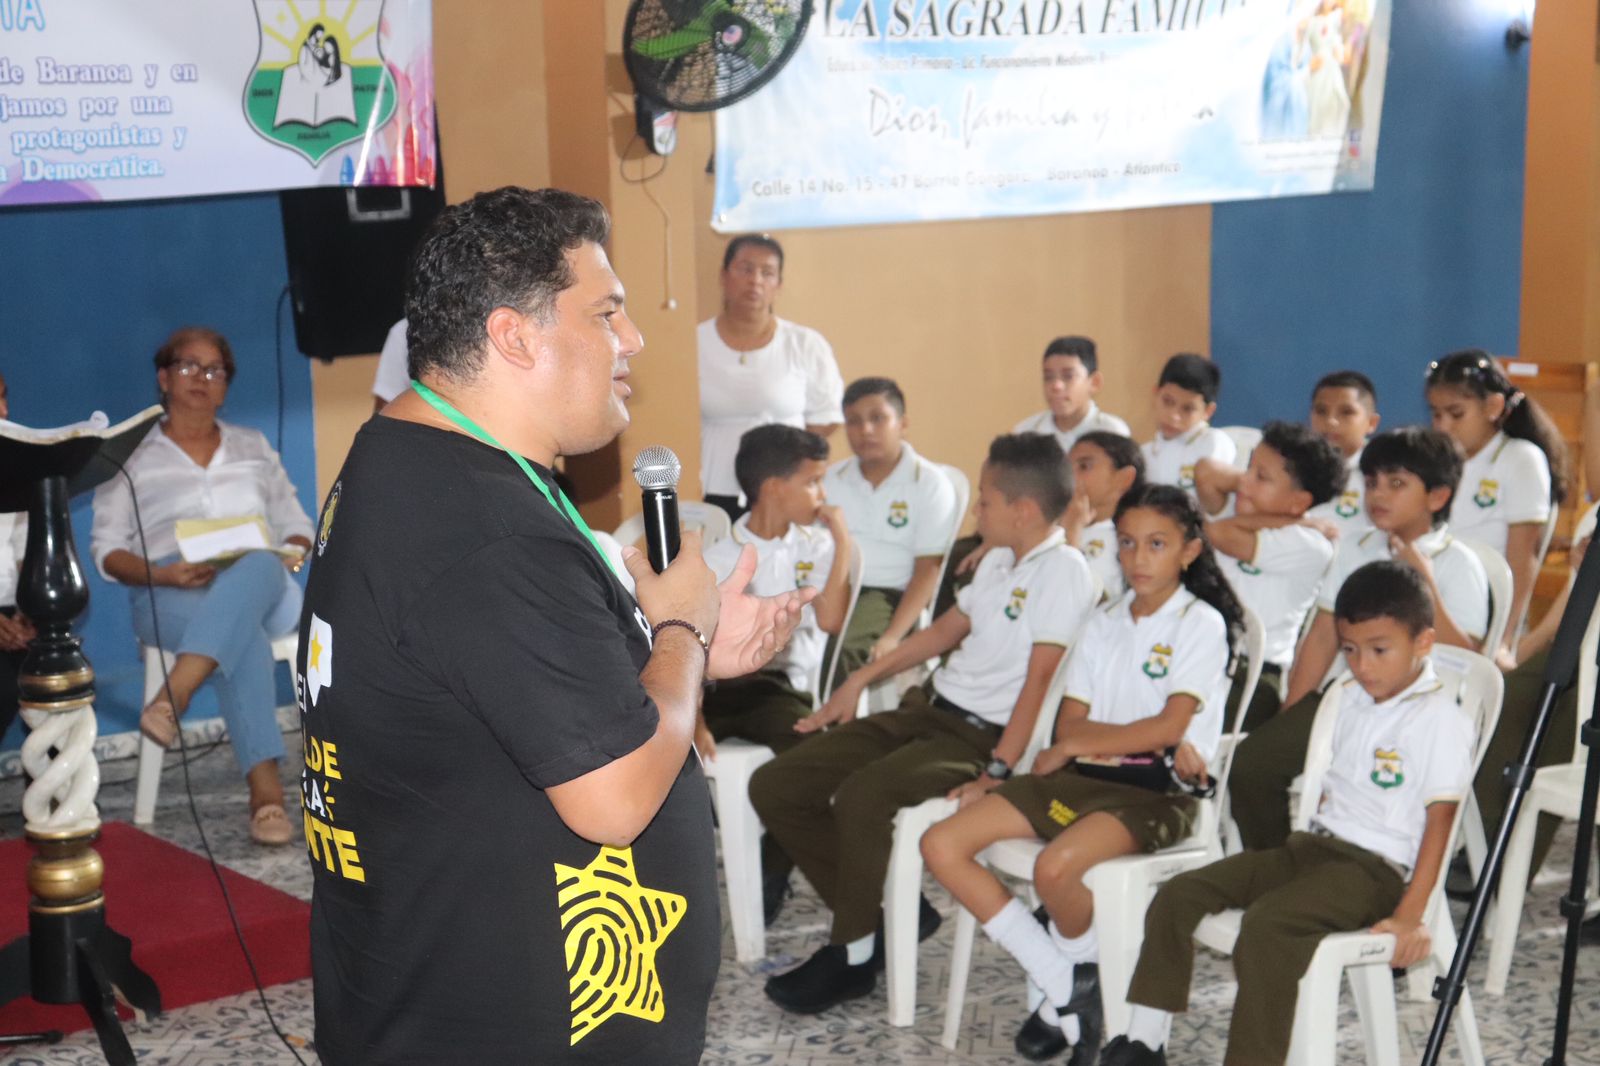 Niños y niñas participaron de debate lúdico-pedagógico en Baranoa